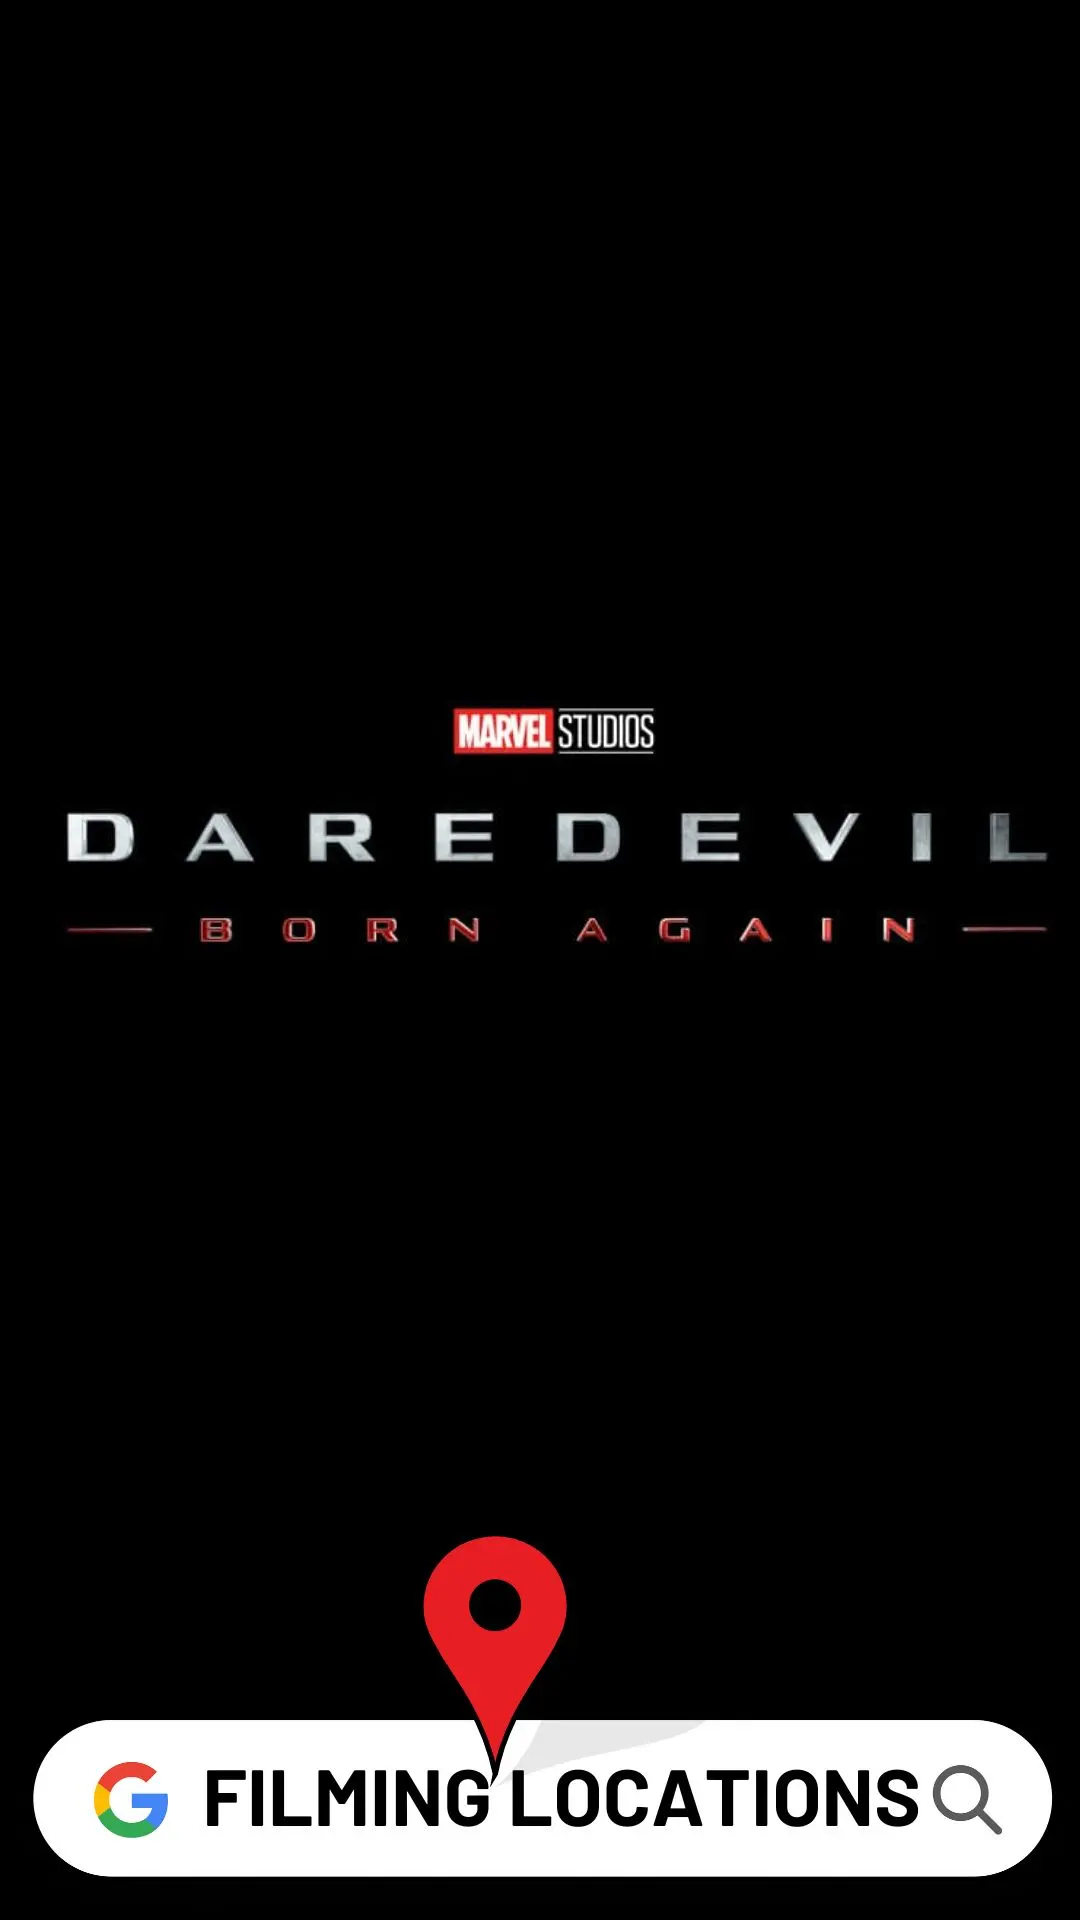 Daredevil Born Again Filming Locations